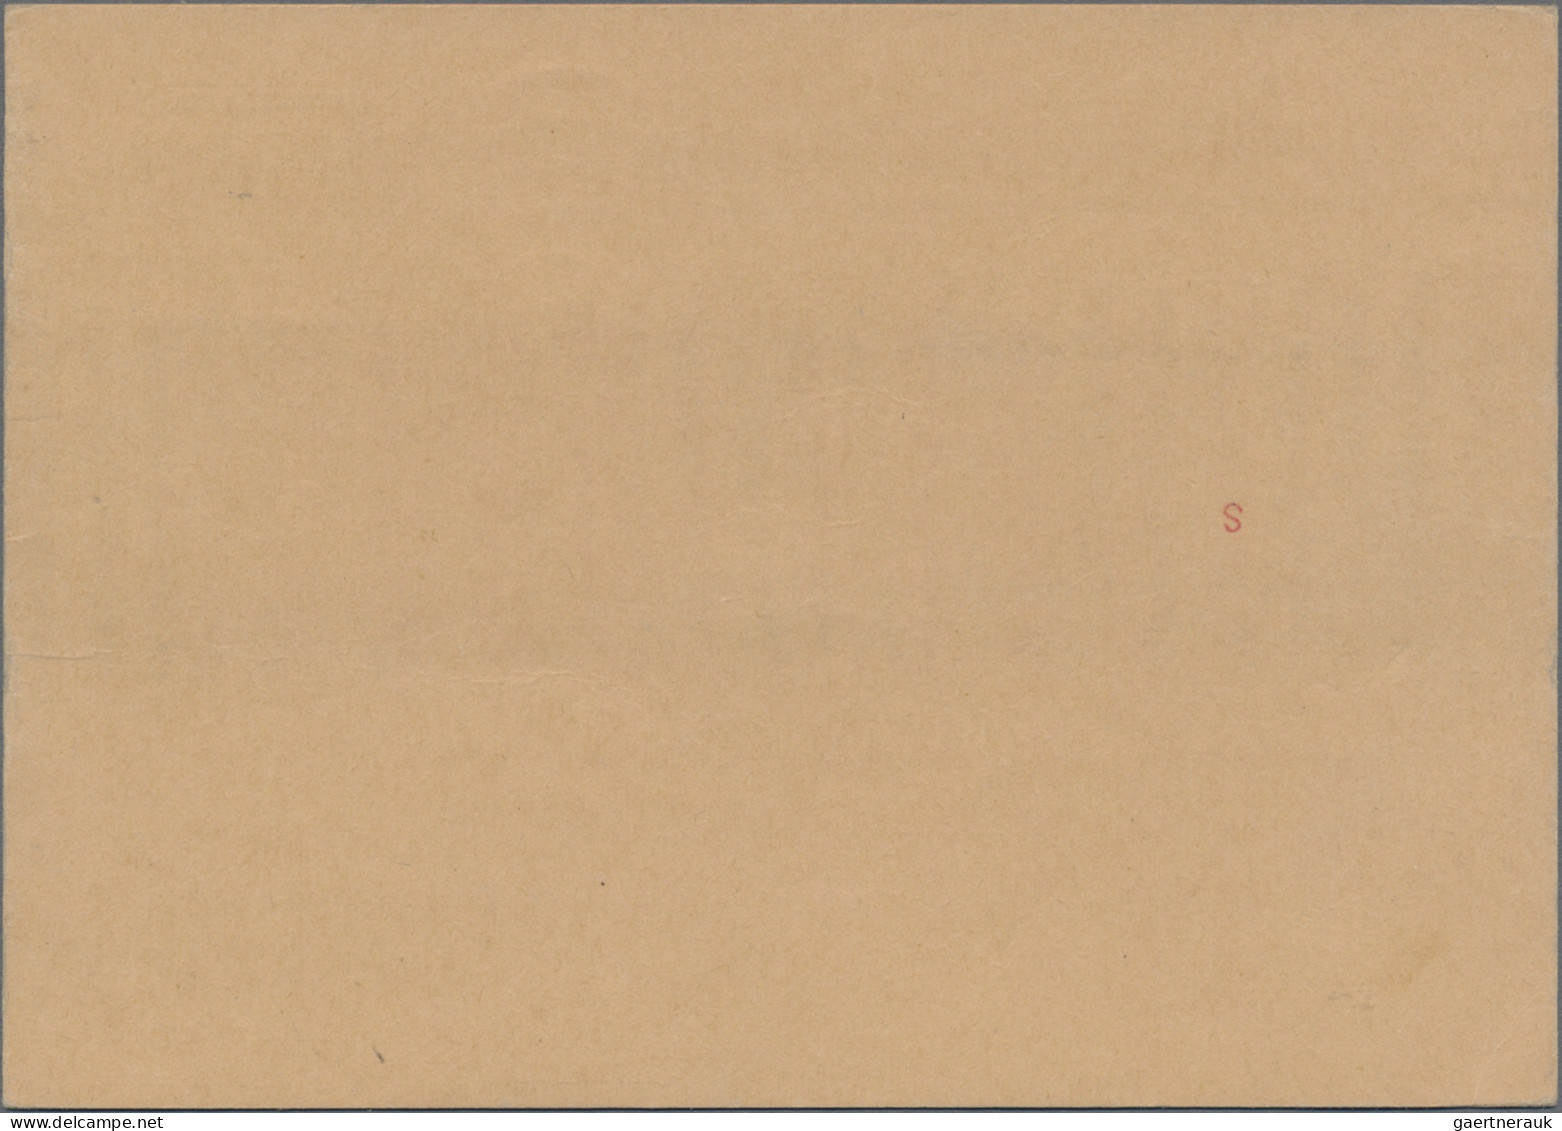 Schweiz - Besonderheiten: 1964, sehr seltener Ersttag-Umschlag "Cept 1962" der P